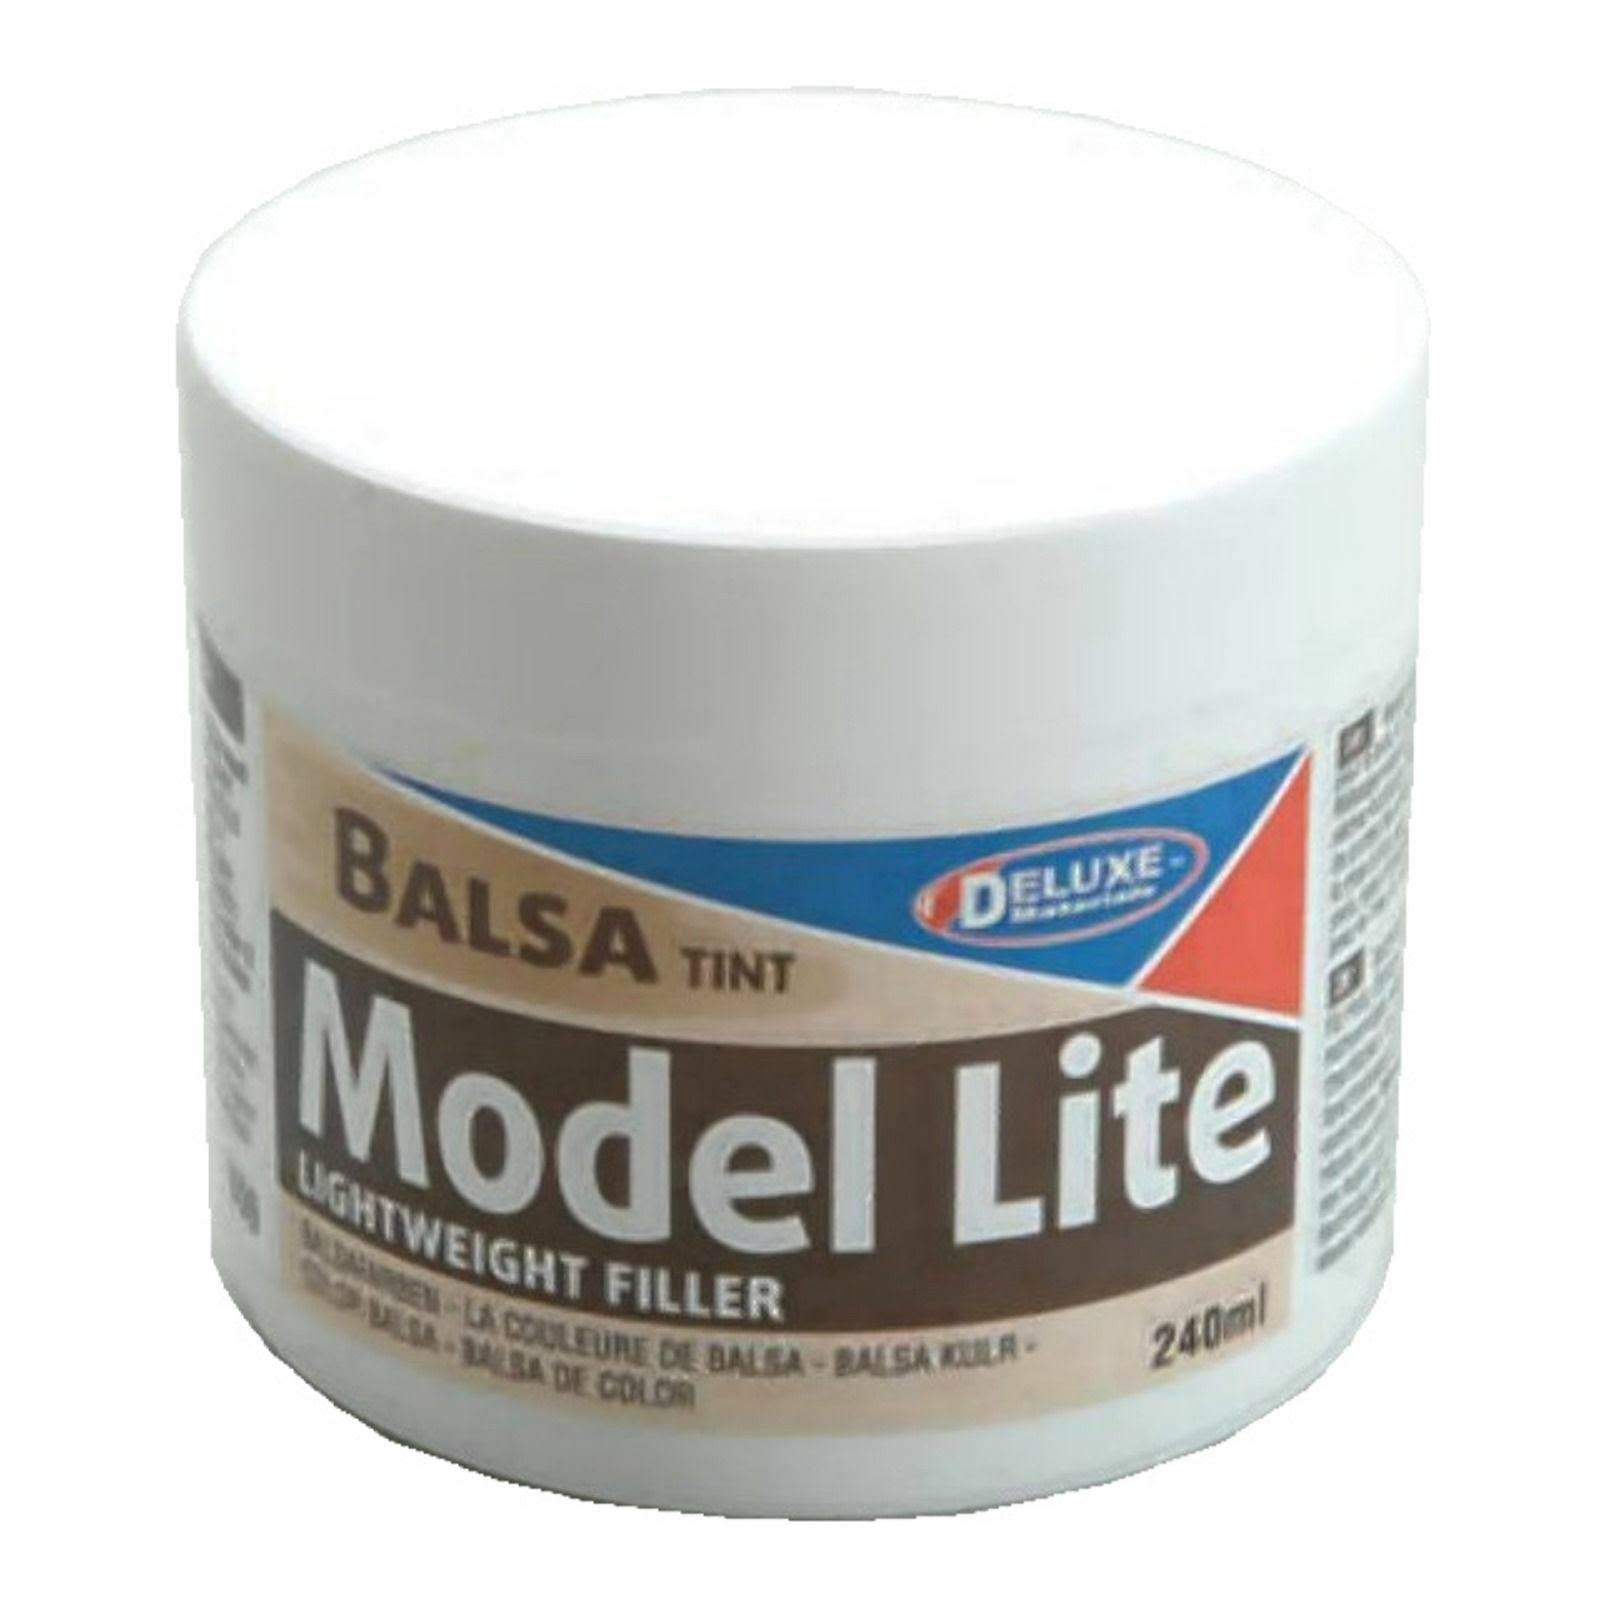 Balsa Deluxe Materials Model Lite Lightweight Filler - 240ml